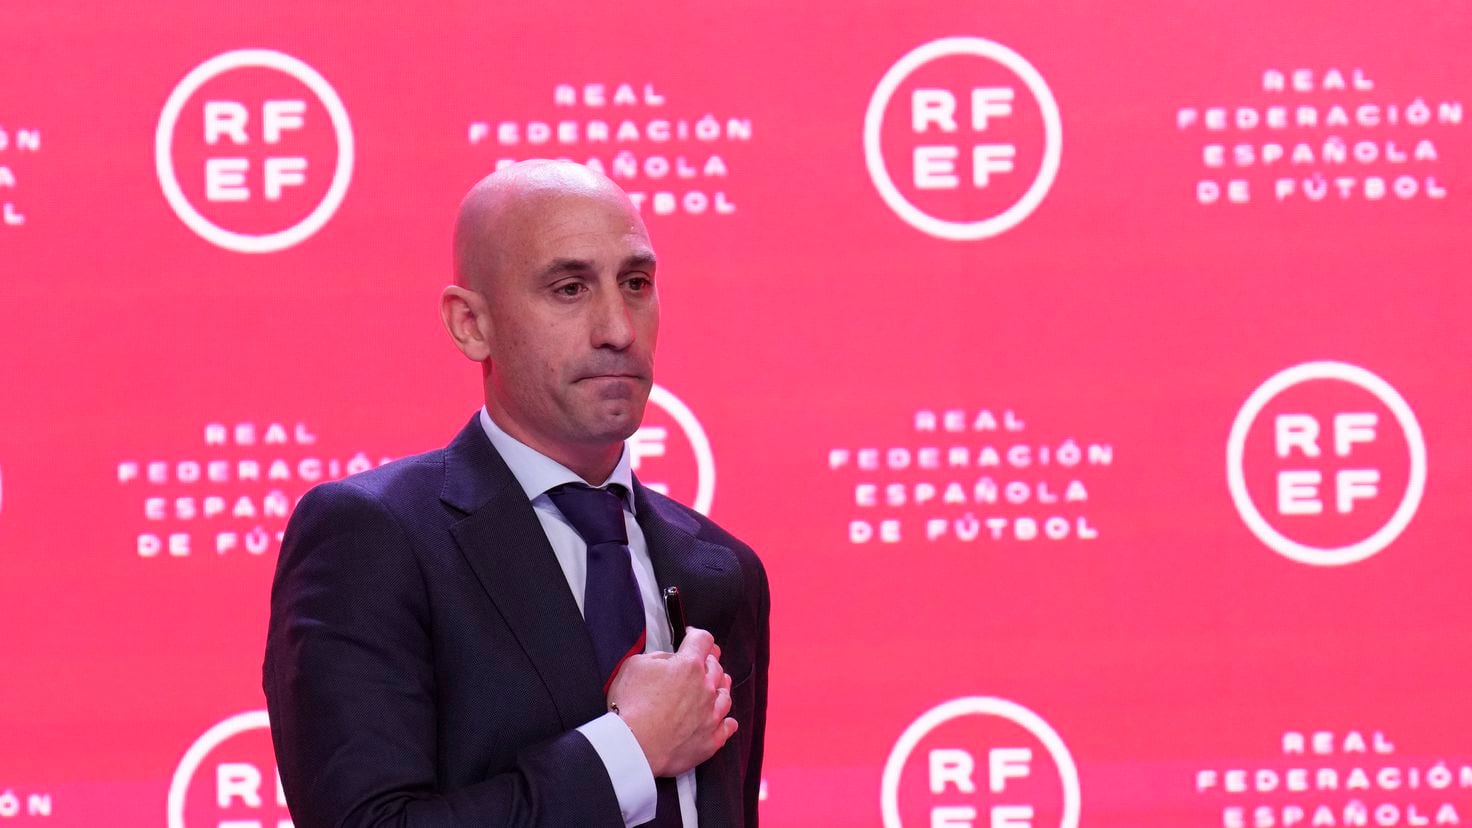 El presidente de la Federación Española de Fútbol, ​​Luis Rubiales, será suspendido inmediatamente tras negarse a dimitir